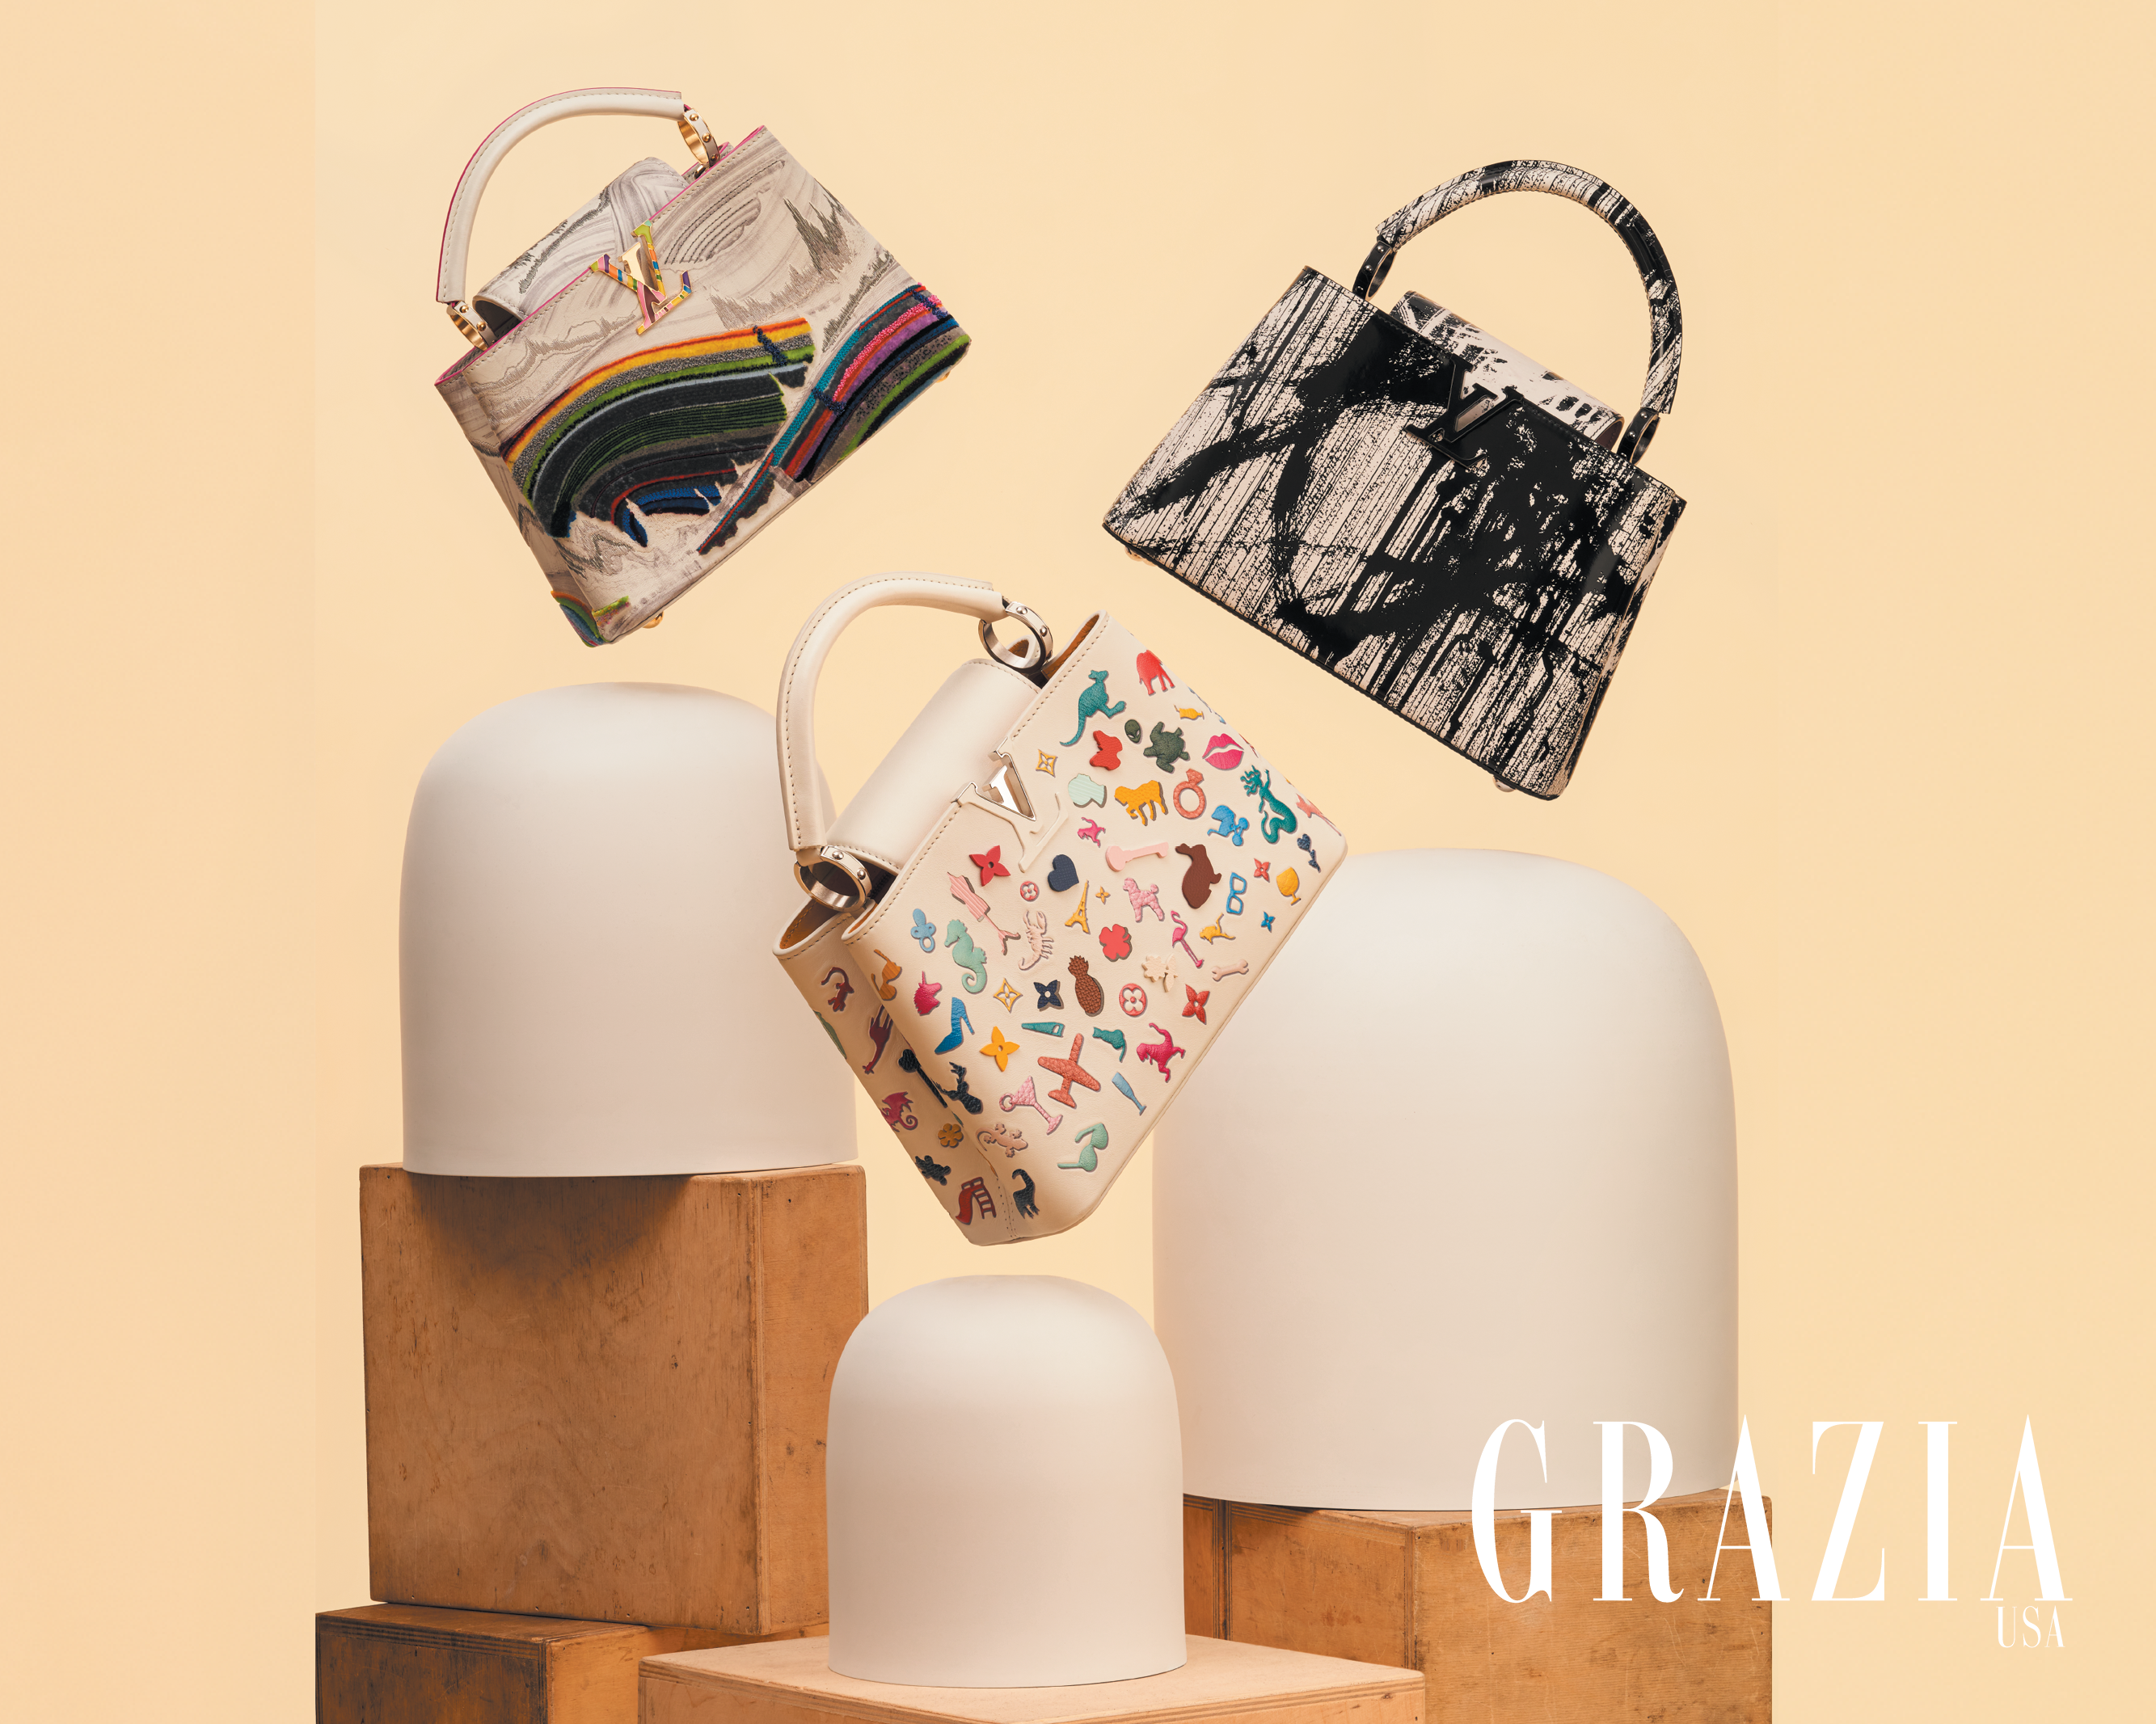 Editors Pick: Louis Vuitton Capucines Bags - A&E Magazine